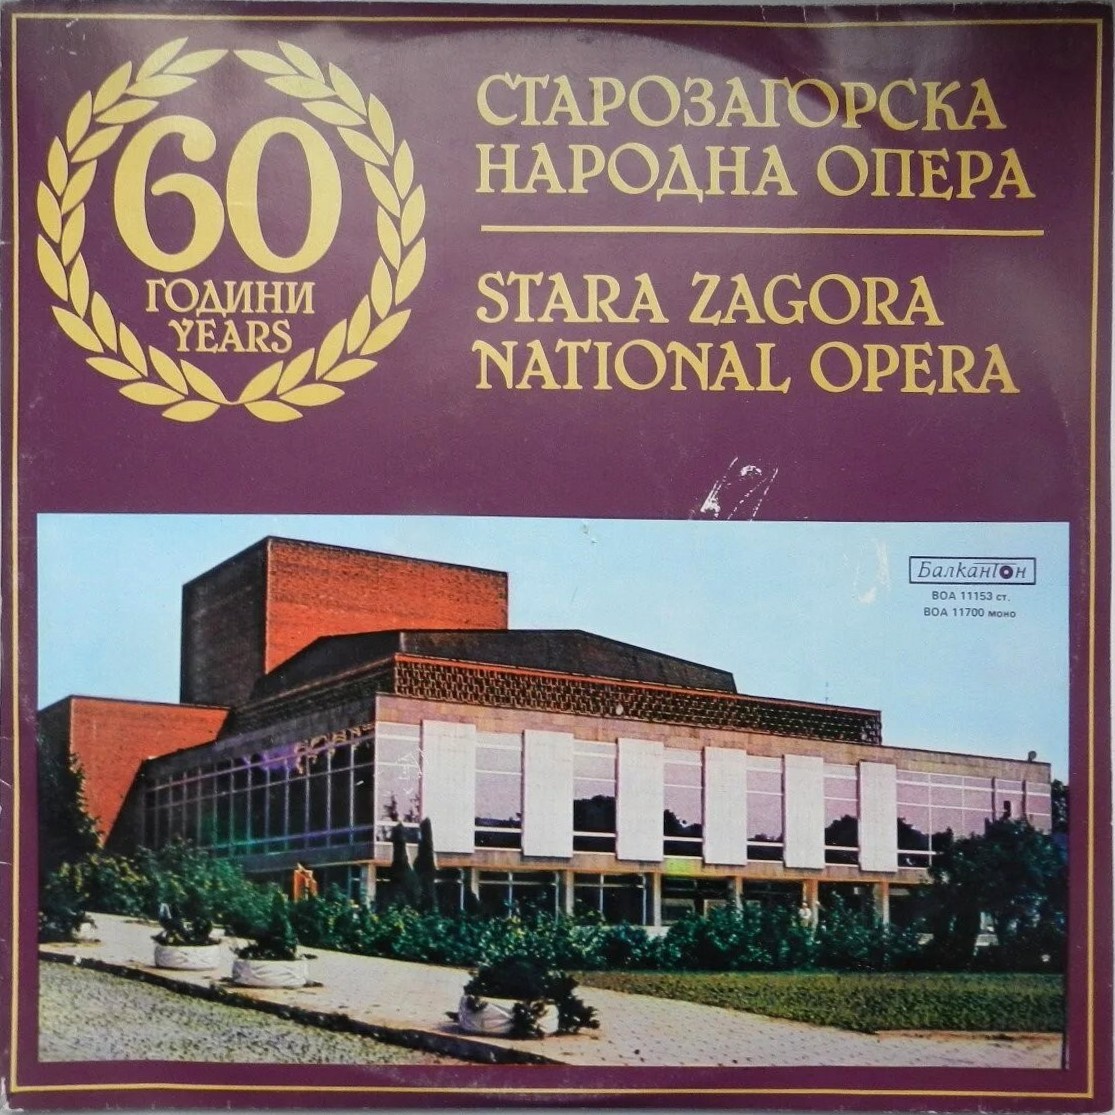 60 години Старозагорска народна опера